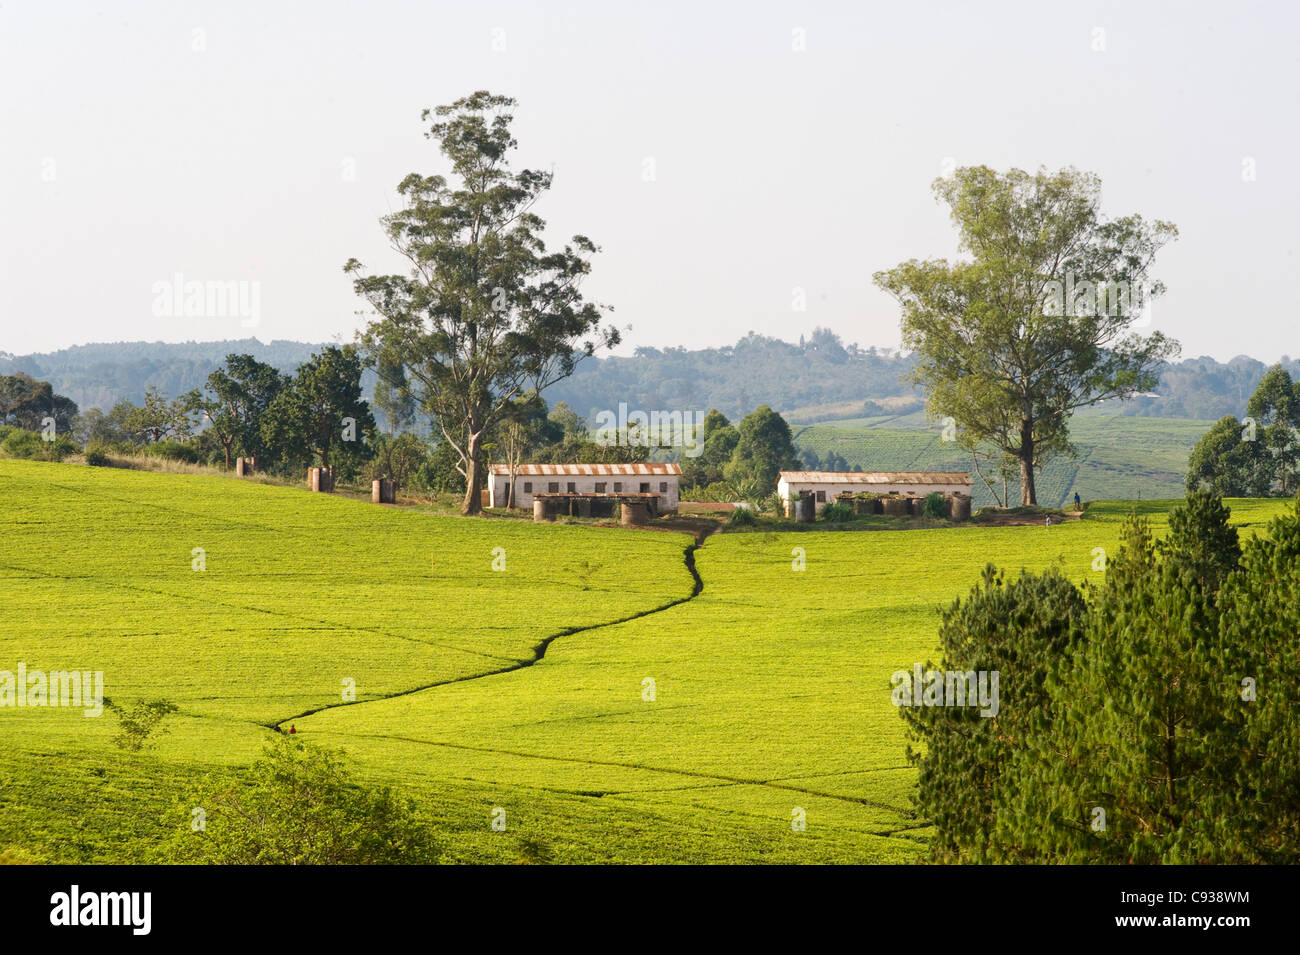 Malawi, Thyolo, Satemwa Tea Estate.  Tea bushes cloak the landscape at Satemwa Tea plantation. Stock Photo